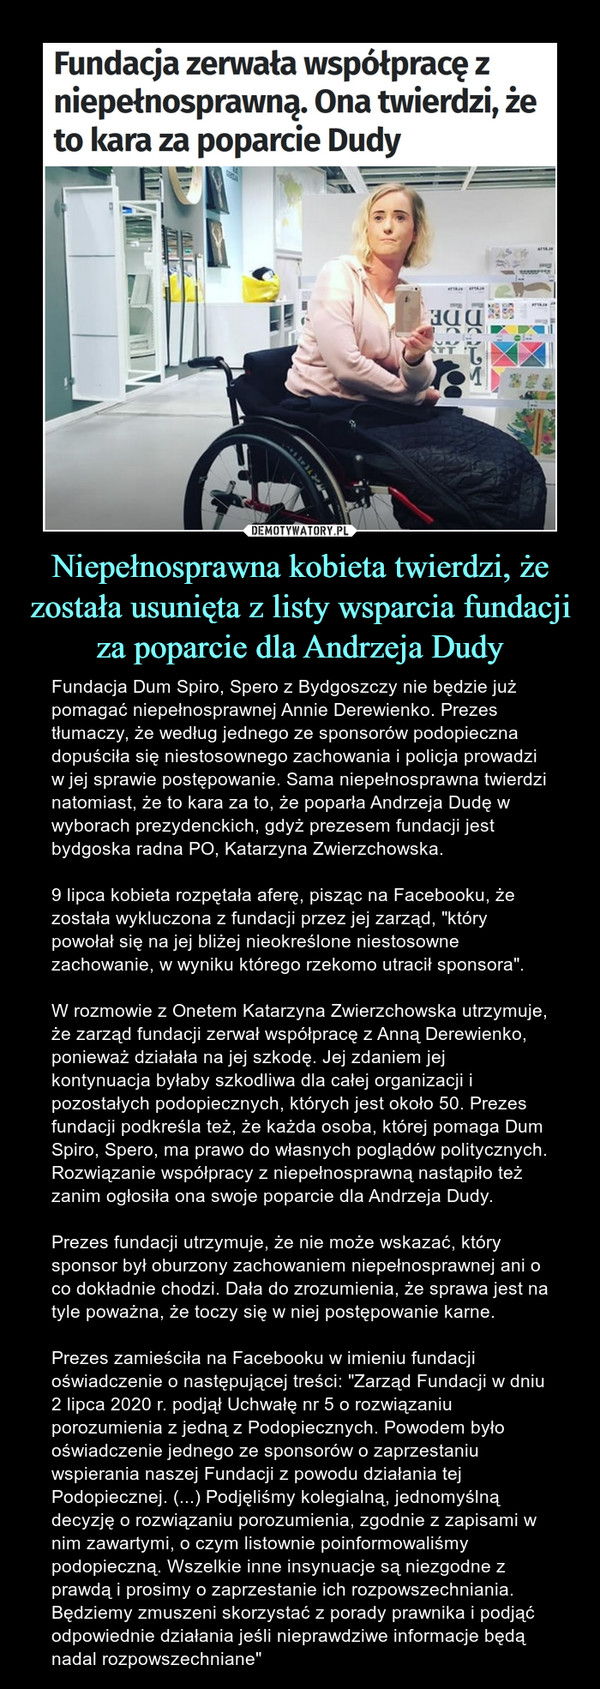 Niepełnosprawna kobieta twierdzi, że została usunięta z listy wsparcia fundacji za poparcie dla Andrzeja Dudy